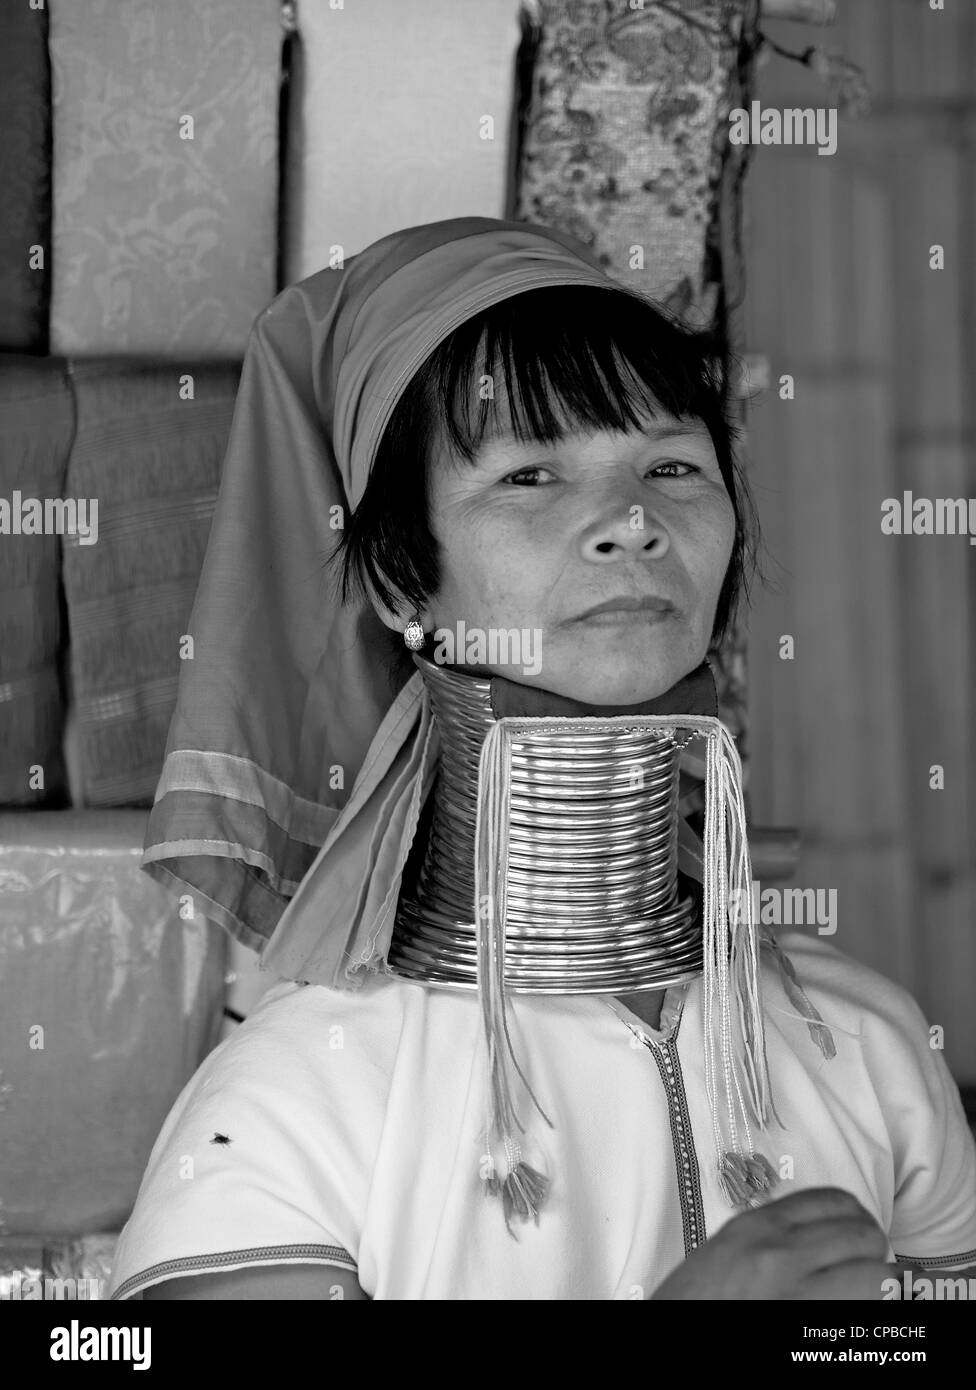 Lange Hals (Kayan) Hill Tribe Frau von Nord-thailand. Chiang Mai Provinz. Ländliche Thailand Menschen S.E. Asien. Bergstämme der Schwarz-Weiß-Fotografie Stockfoto